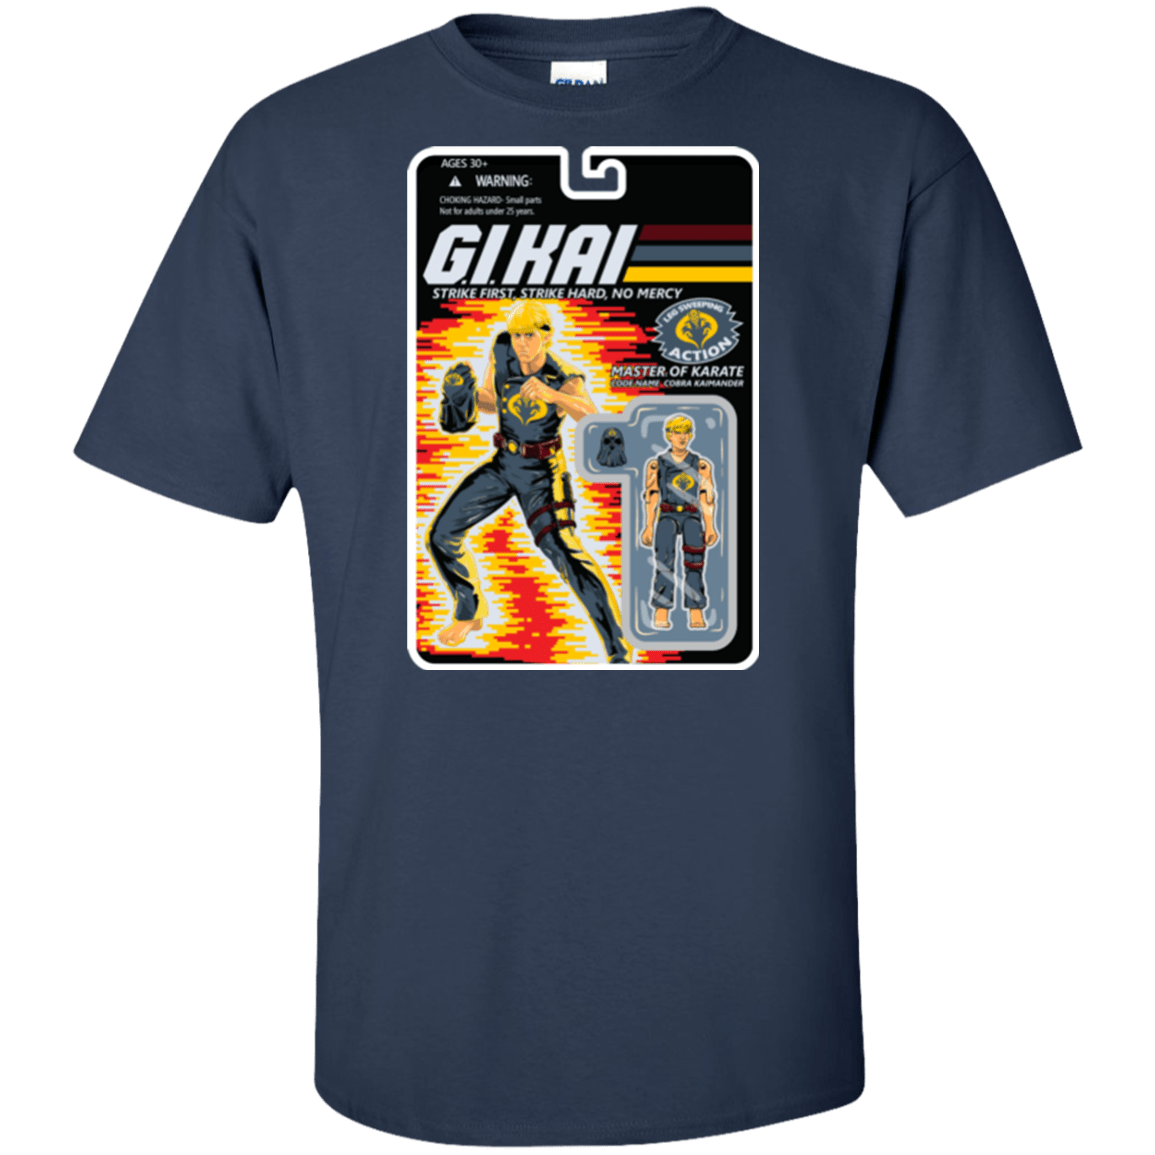 T-Shirts Navy / XLT GI KAI Tall T-Shirt